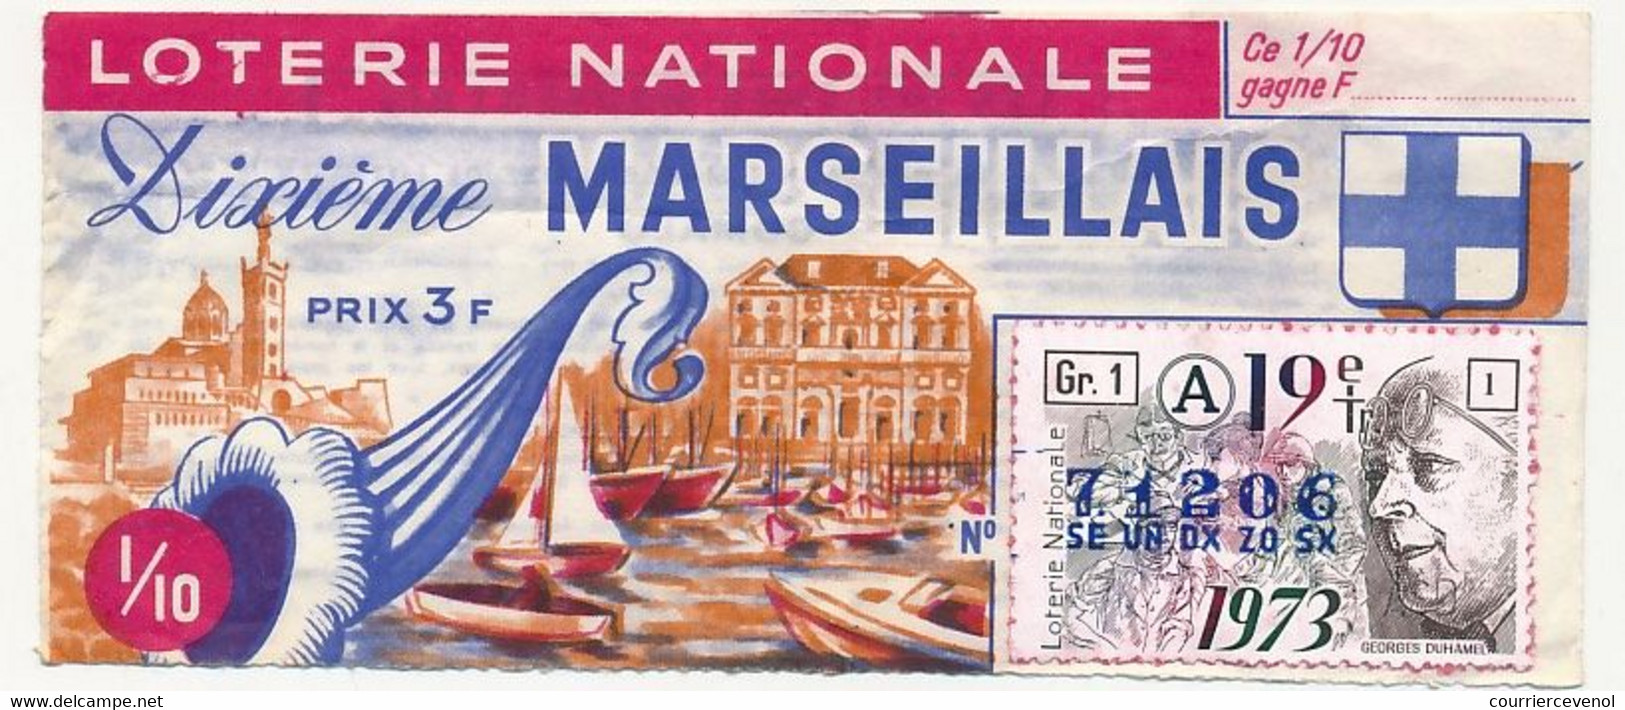 FRANCE - Loterie Nationale - 1/10ème - Dixième Marseillais - 19eme Tranche - 1973 - Lotterielose